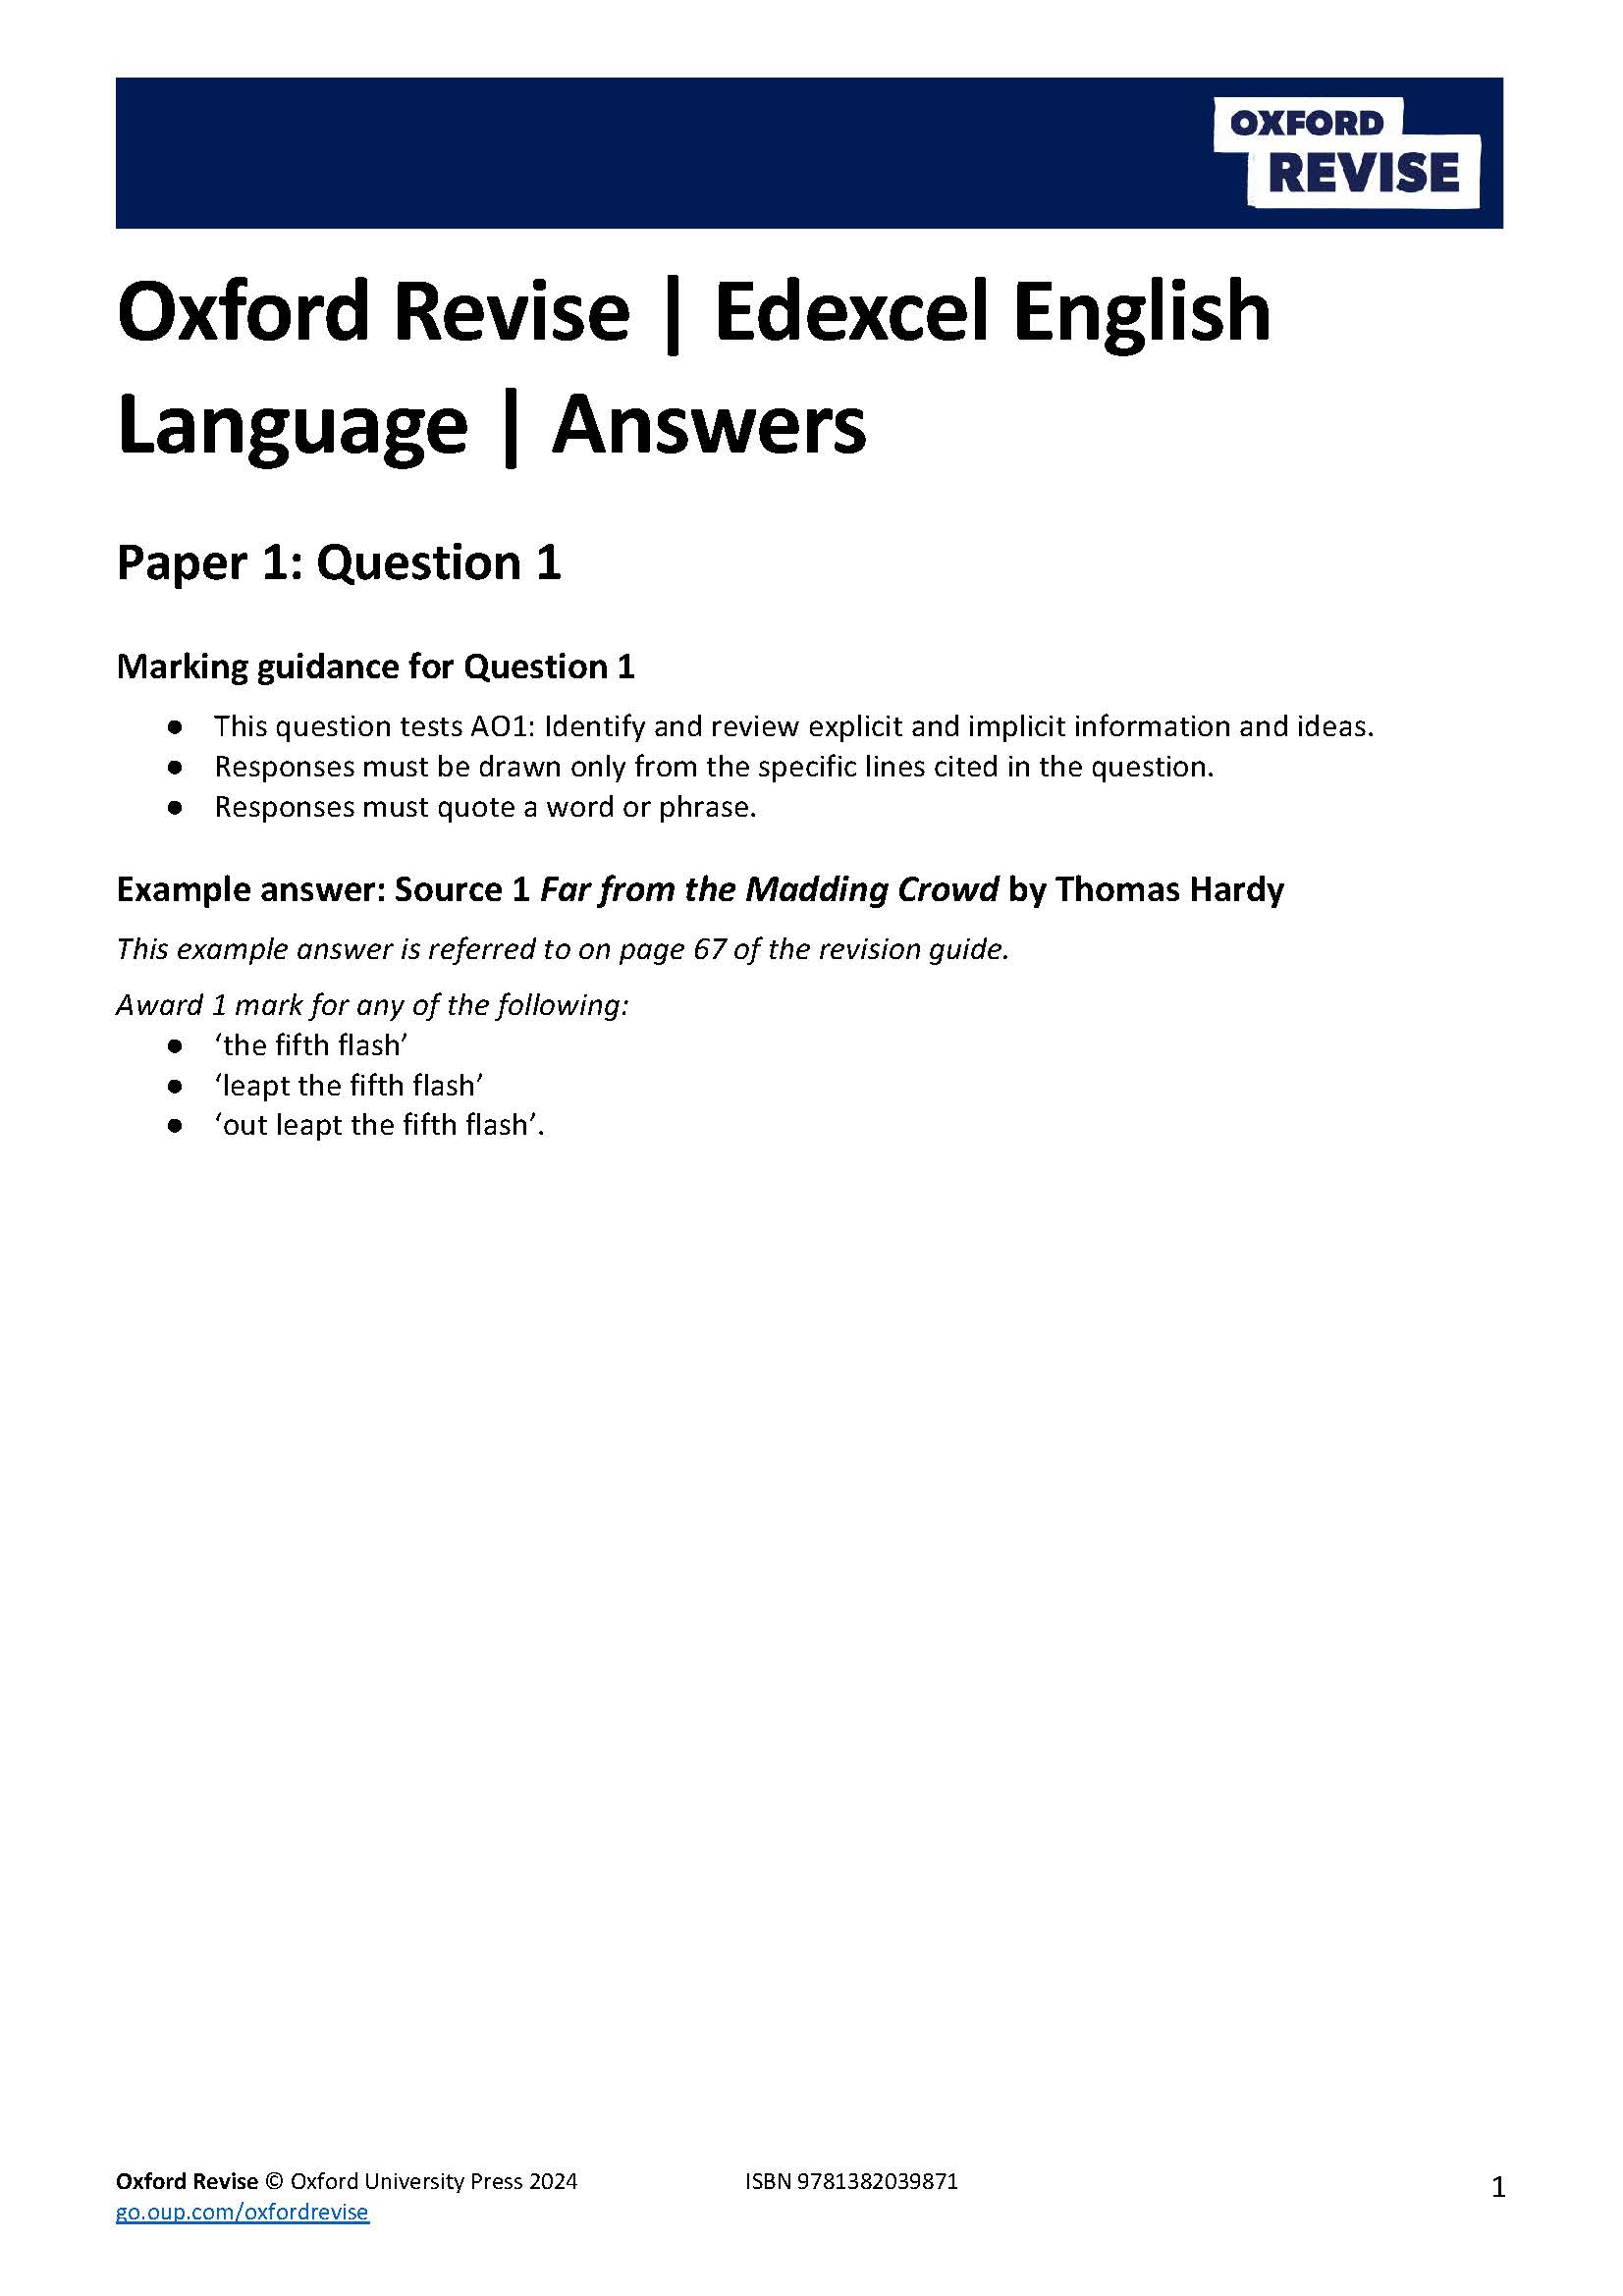 Oxford Revise Edexcel GCSE English Language Component 1 Answers